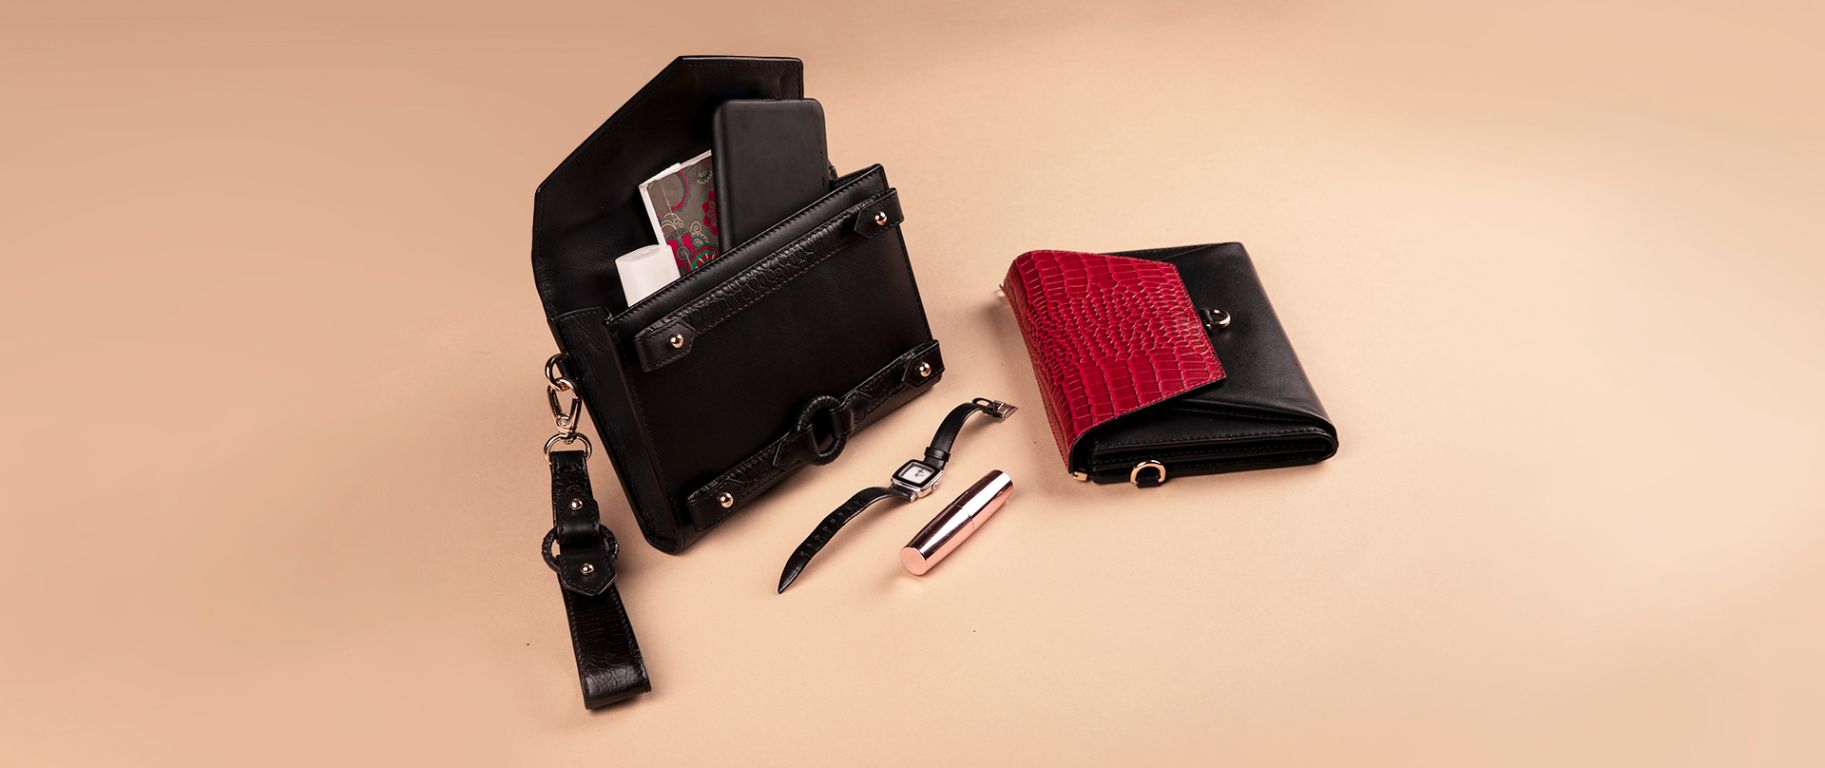 Ember Belt Bag with Ember Sleek Wallet & Wristlet in Black & Red Leather